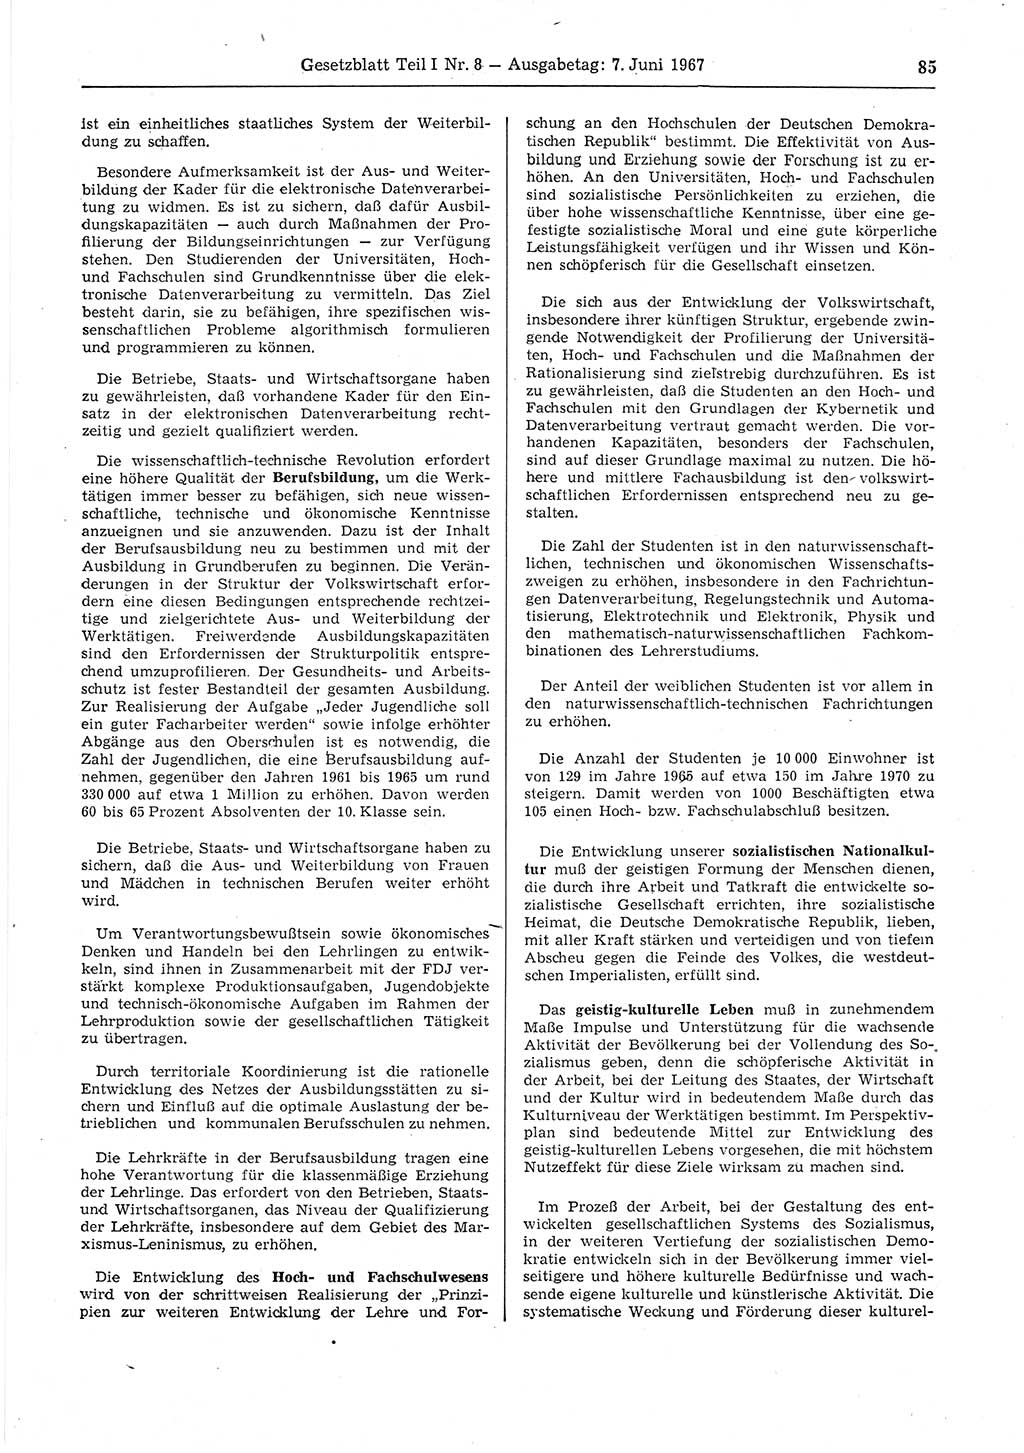 Gesetzblatt (GBl.) der Deutschen Demokratischen Republik (DDR) Teil Ⅰ 1967, Seite 85 (GBl. DDR Ⅰ 1967, S. 85)